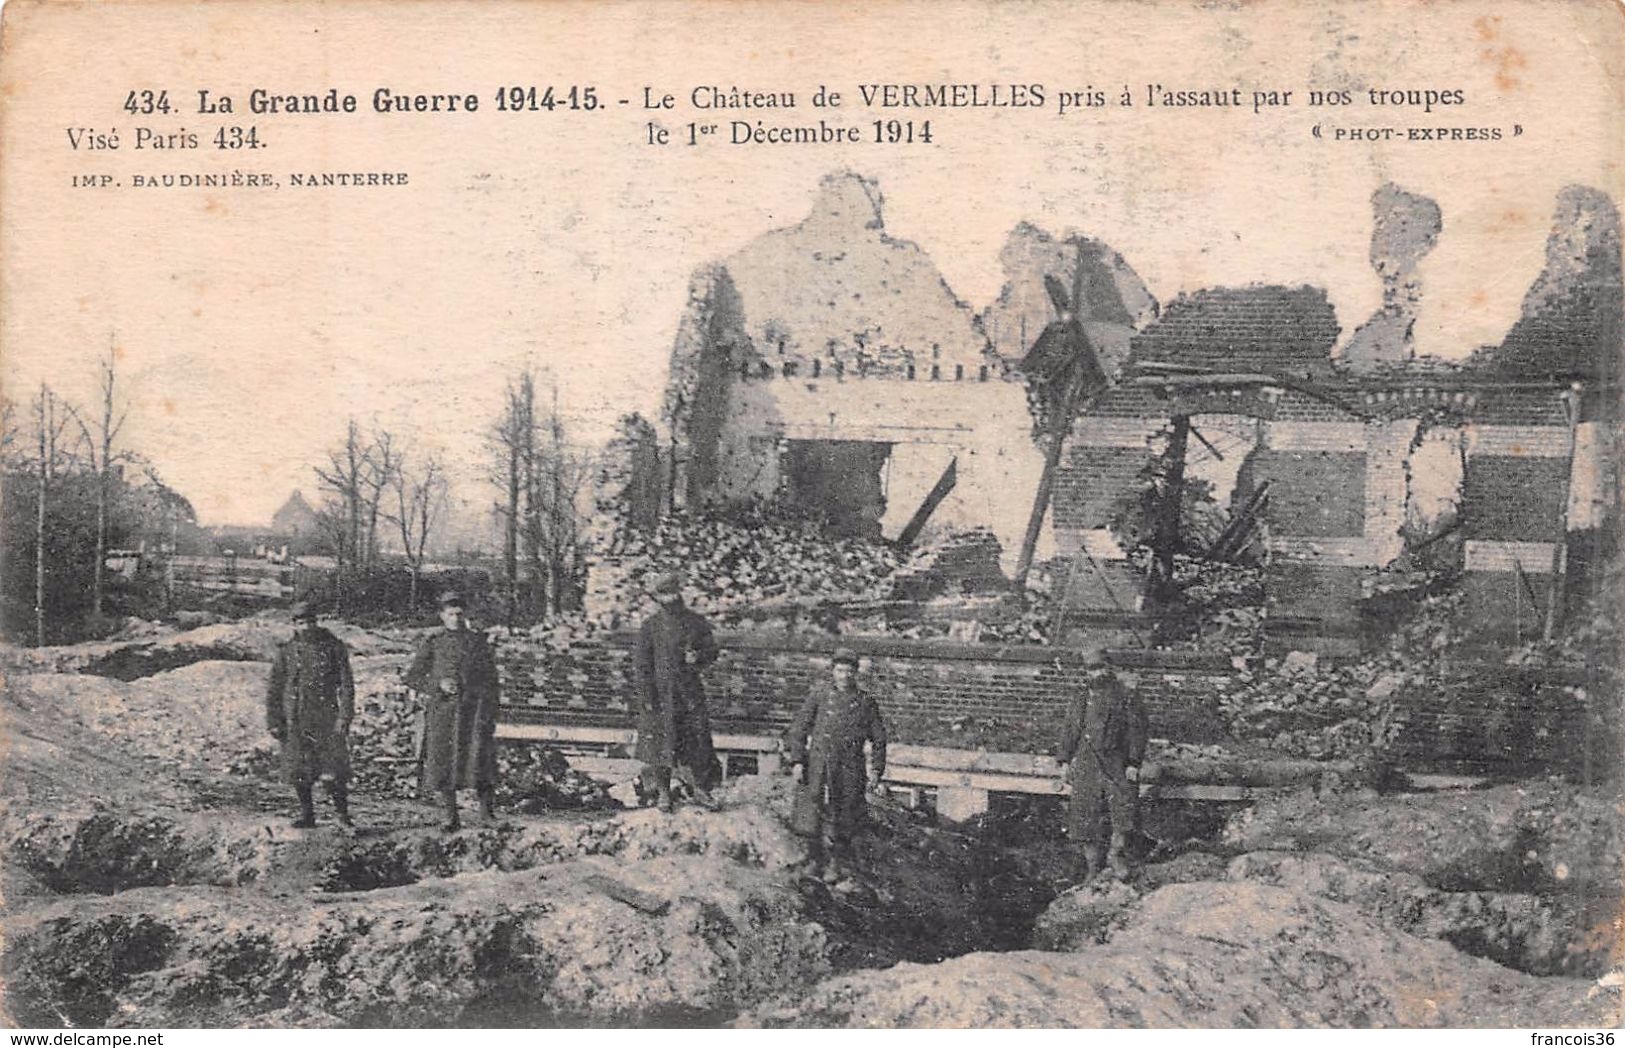 (62) - Lot de 19 CPA de Vermelles - Pas de Calais - témoignage Guerre 1914 1915 - bon état